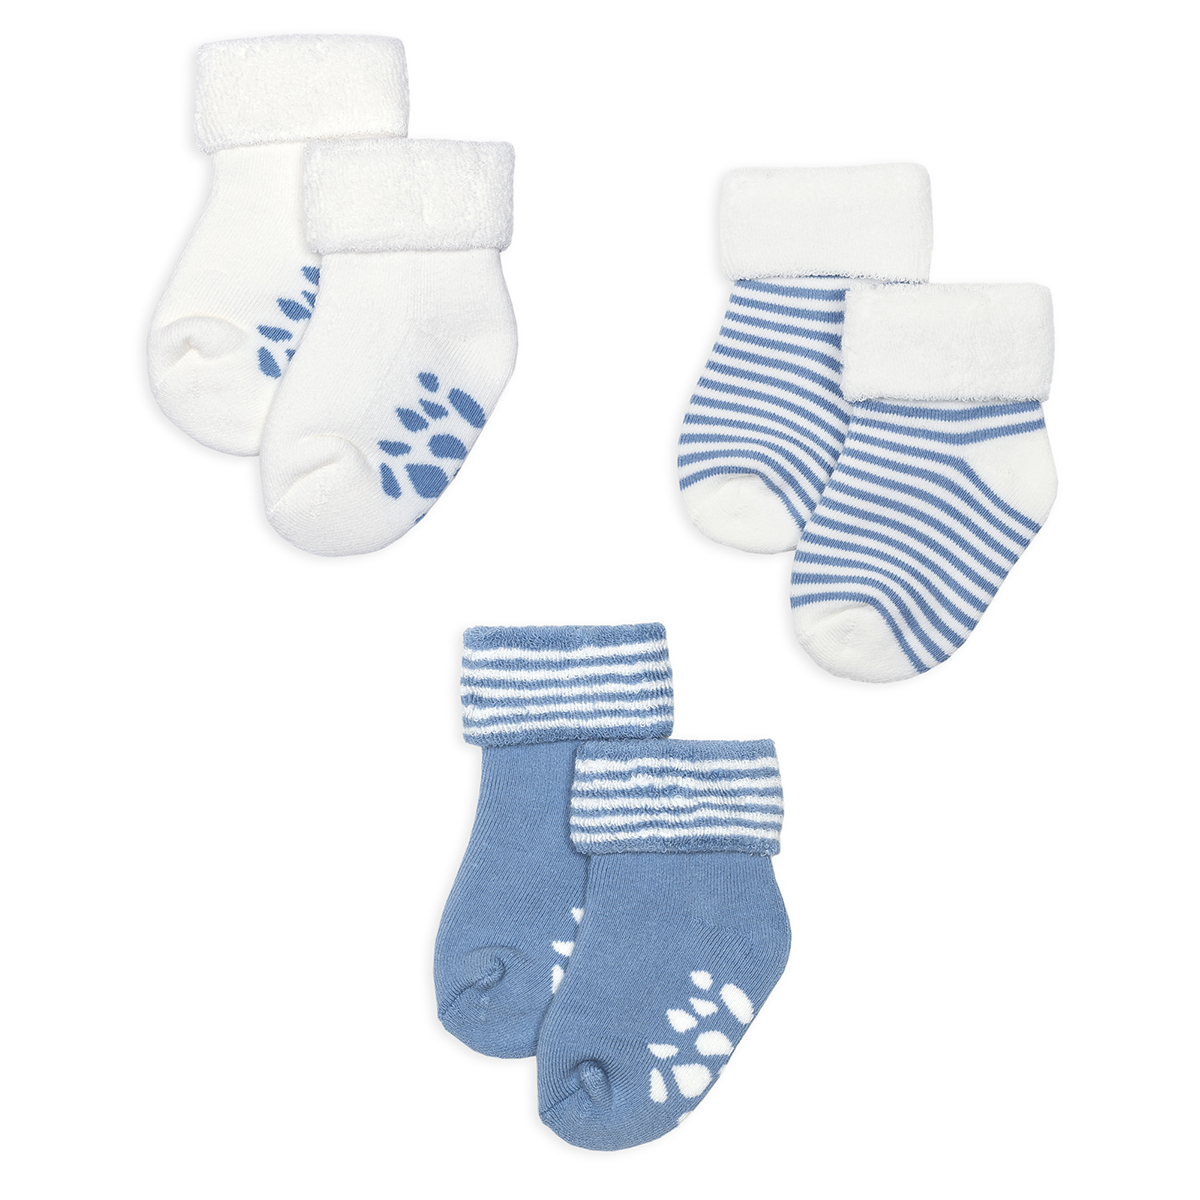 Носочки для новорожденных 0. ТМ Biorganic носки для новорождённых р.0-6м. Носки для младенцев. Носочки для новорожденных мальчиков. Носки новорожденному мальчику.